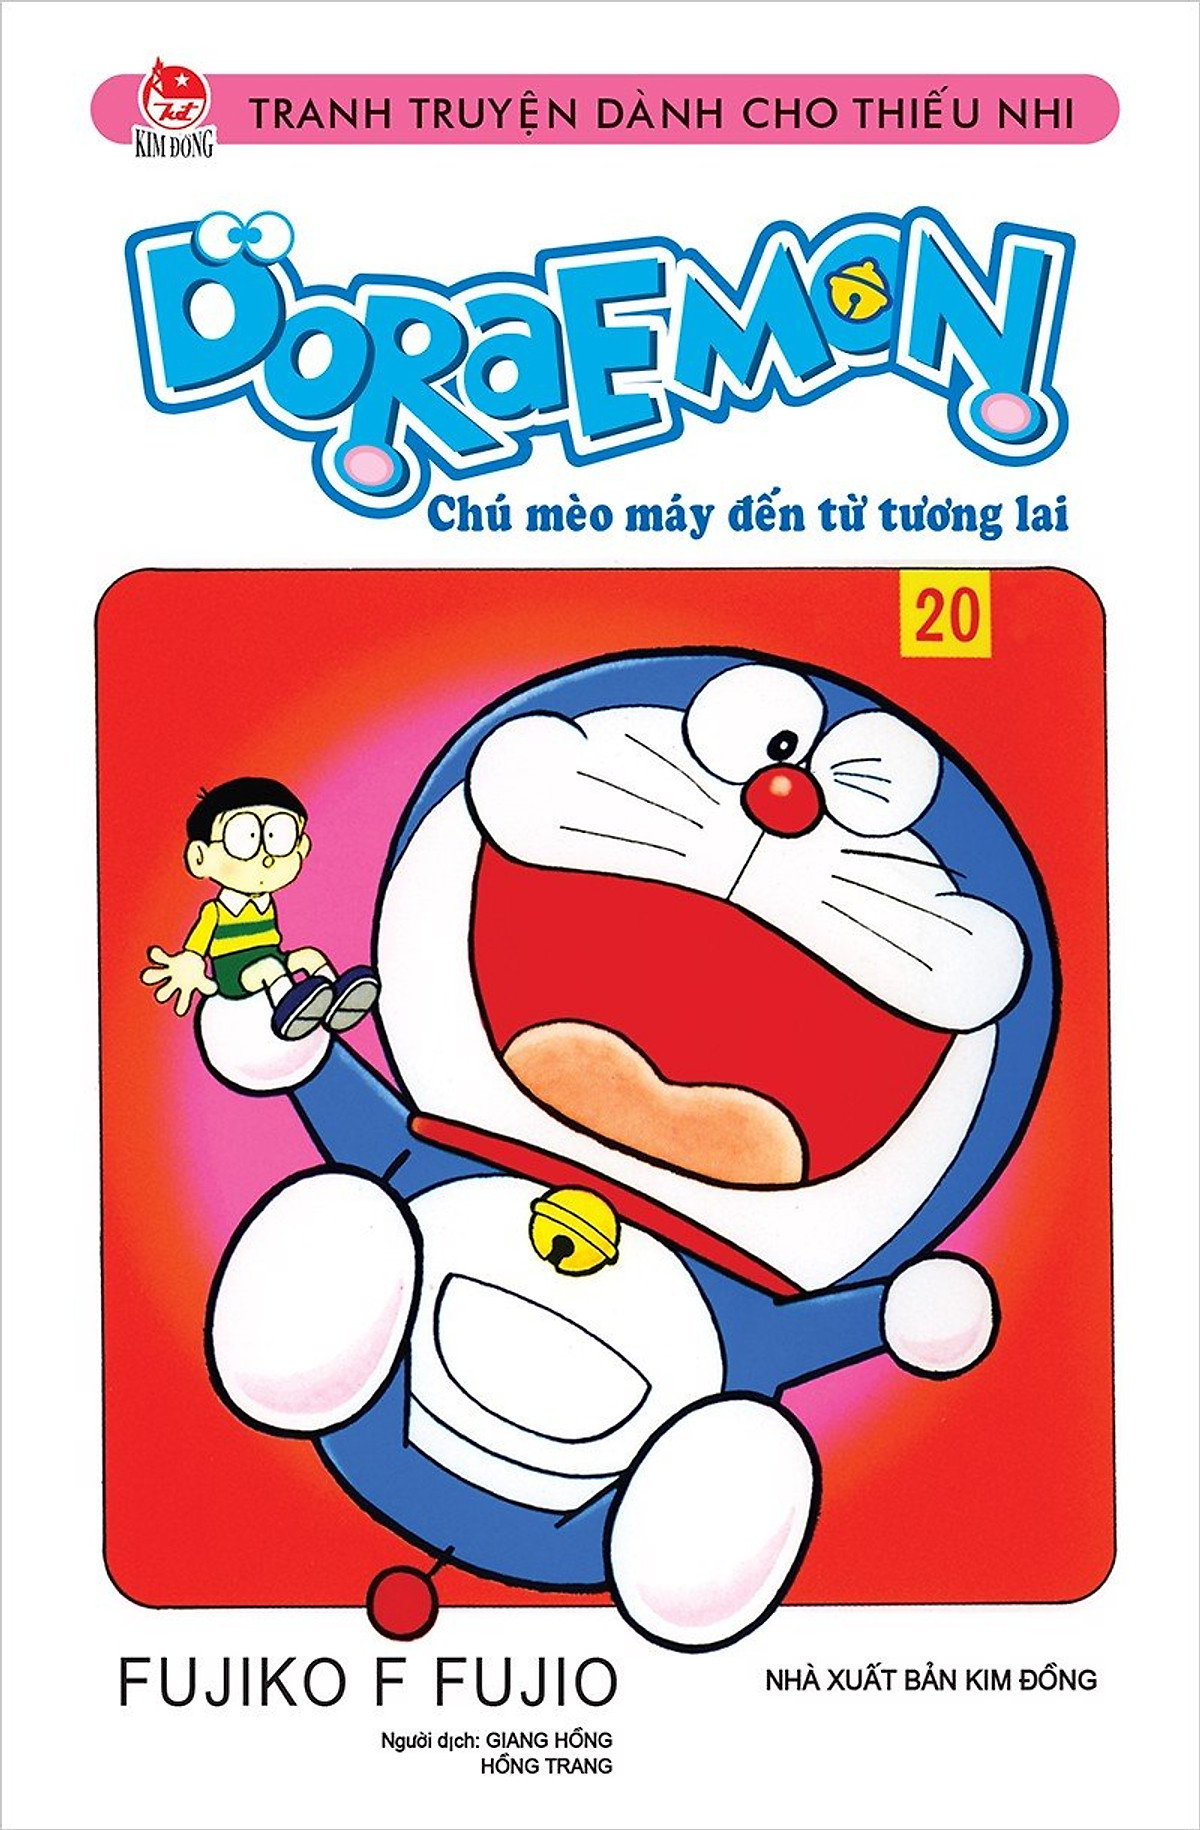 Bạn thích những câu chuyện ngắn vừa lầy lội vừa sáng tạo? Truyện ngắn Doraemon sẽ đáp ứng tất cả những sở thích đó cho bạn. Với bộ truyện đầy tính nghệ thuật và tình huống hài hước, bạn sẽ không thể rời mắt khỏi ảnh truyện ngắn Doraemon này đấy.